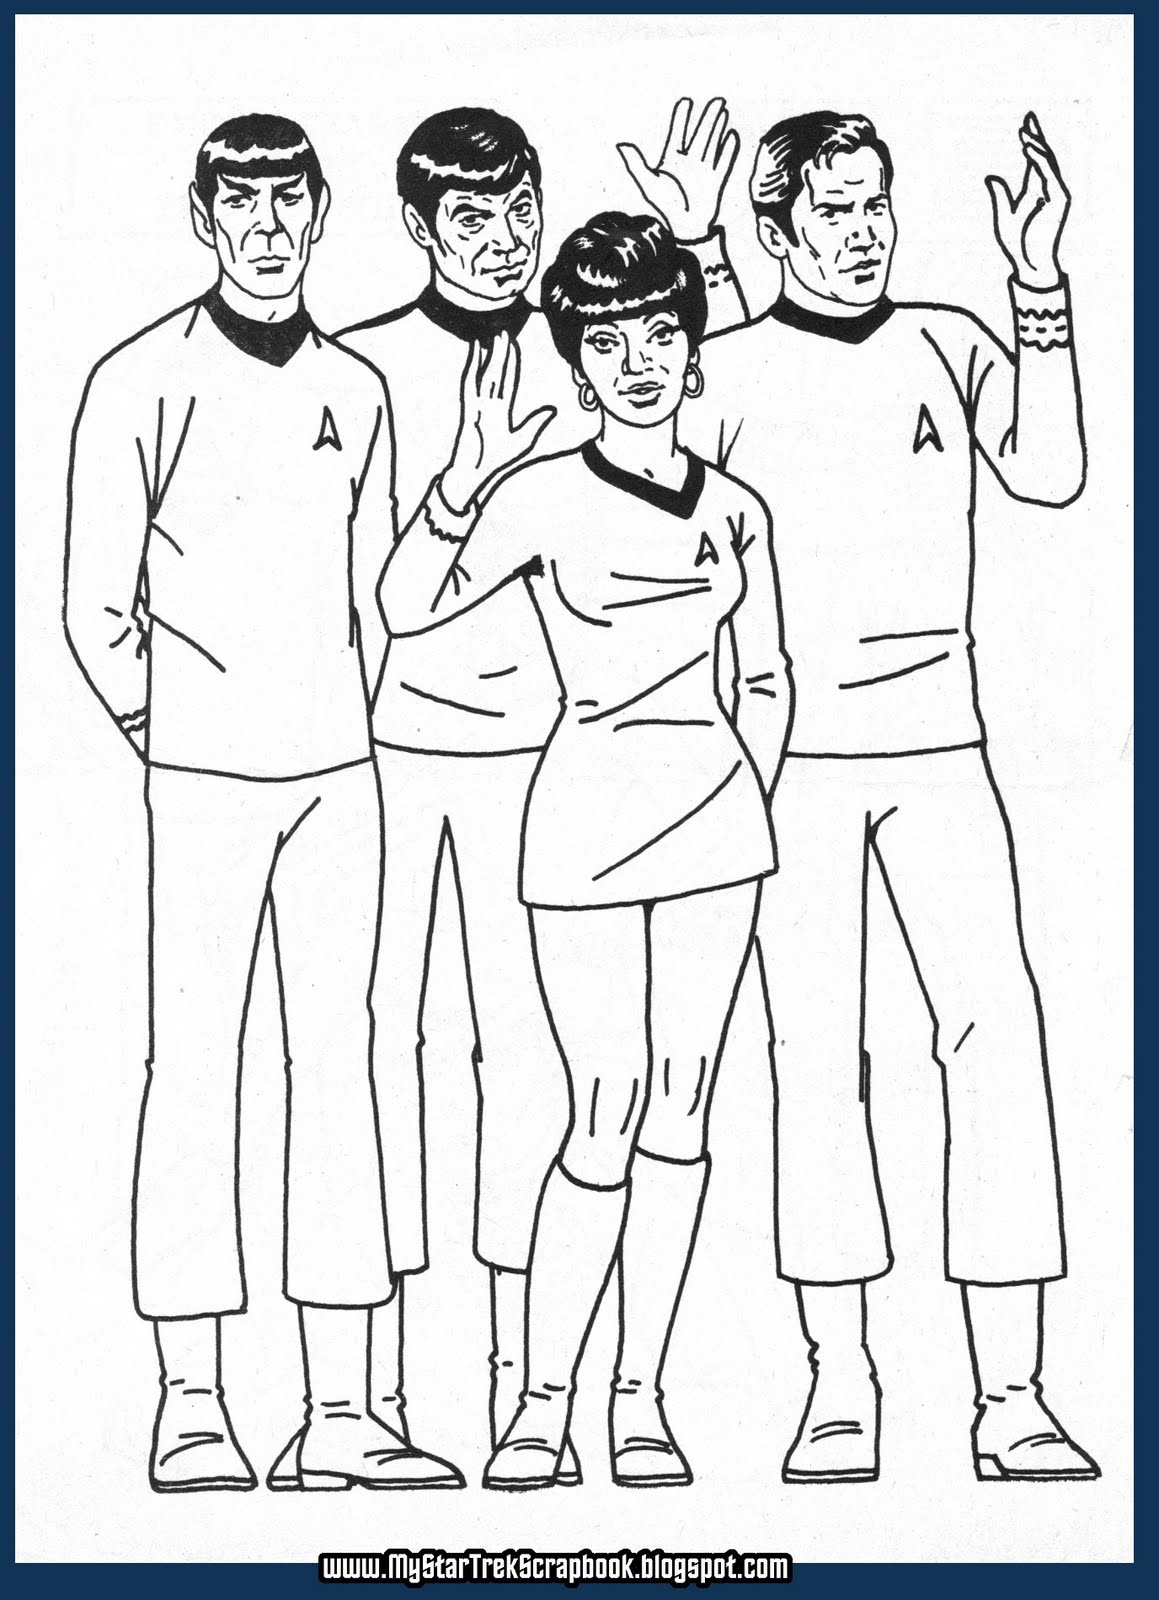 My Star Trek Scrapbook 1987 Article On Sulu's Solo Trek